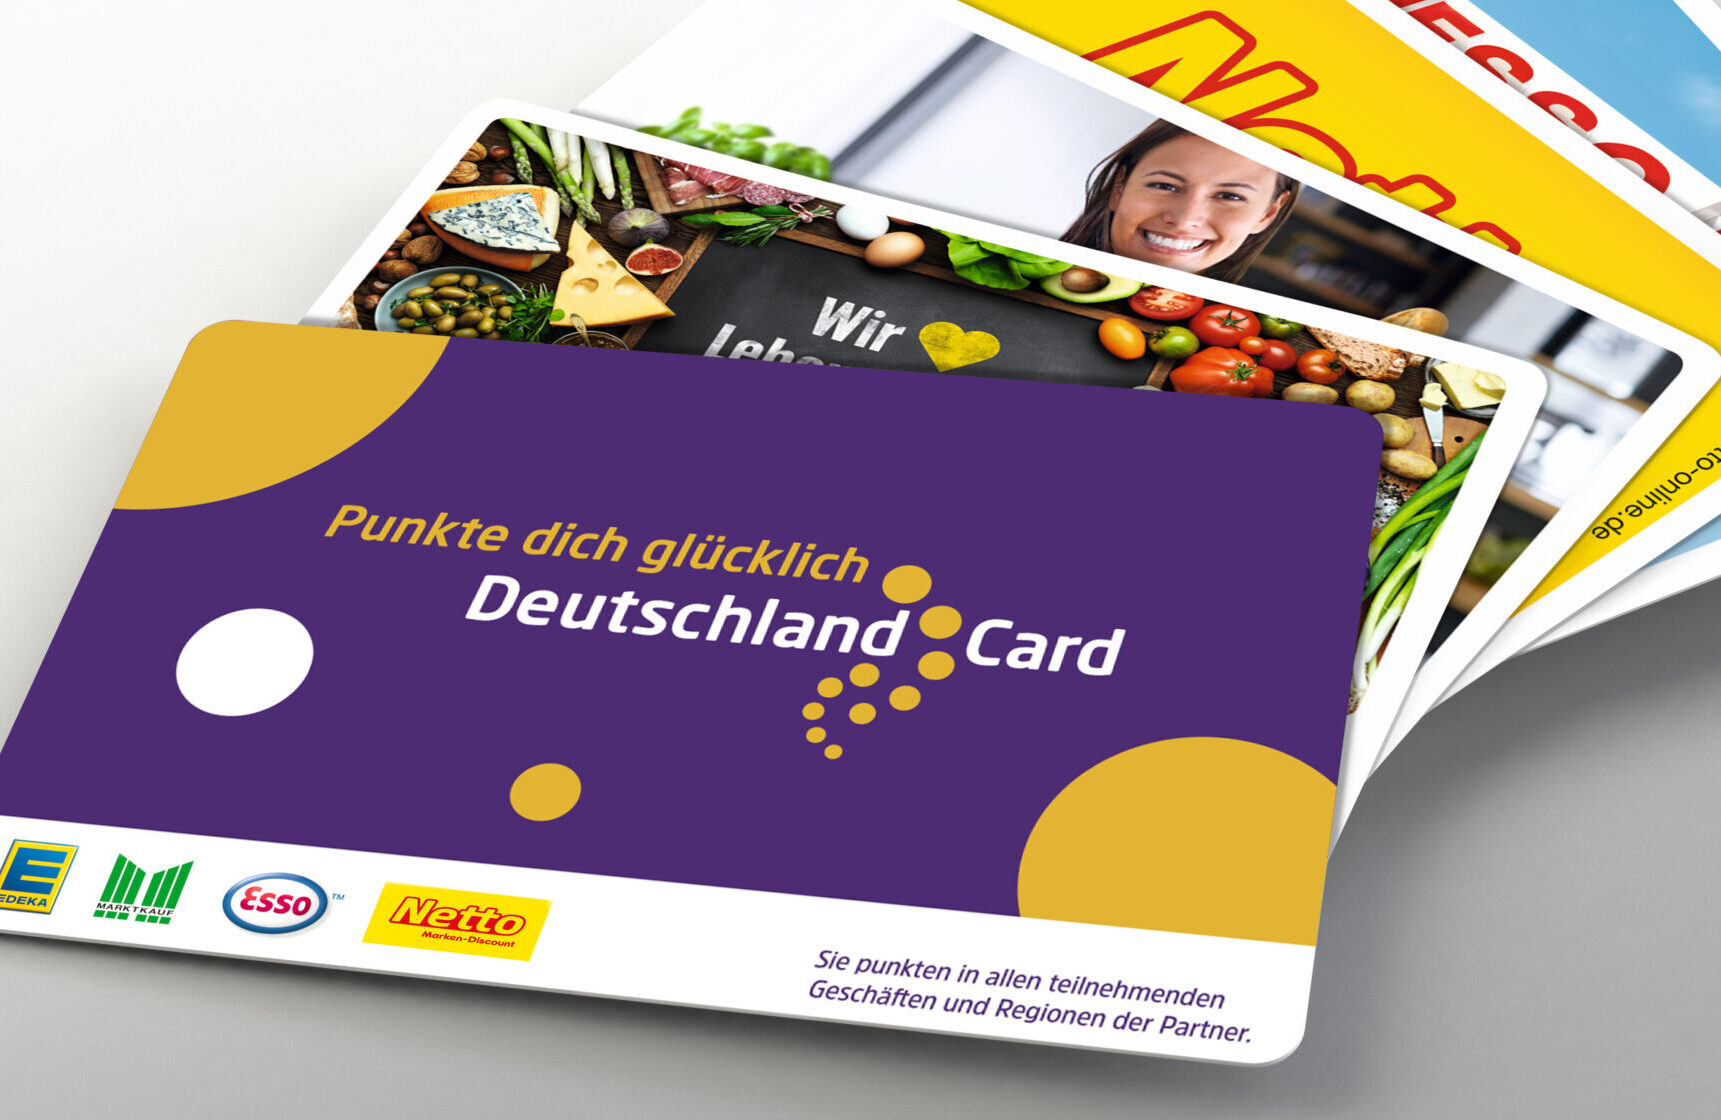 DeutschlandCard 3 aus 99 - mit Glücklos gewinnen